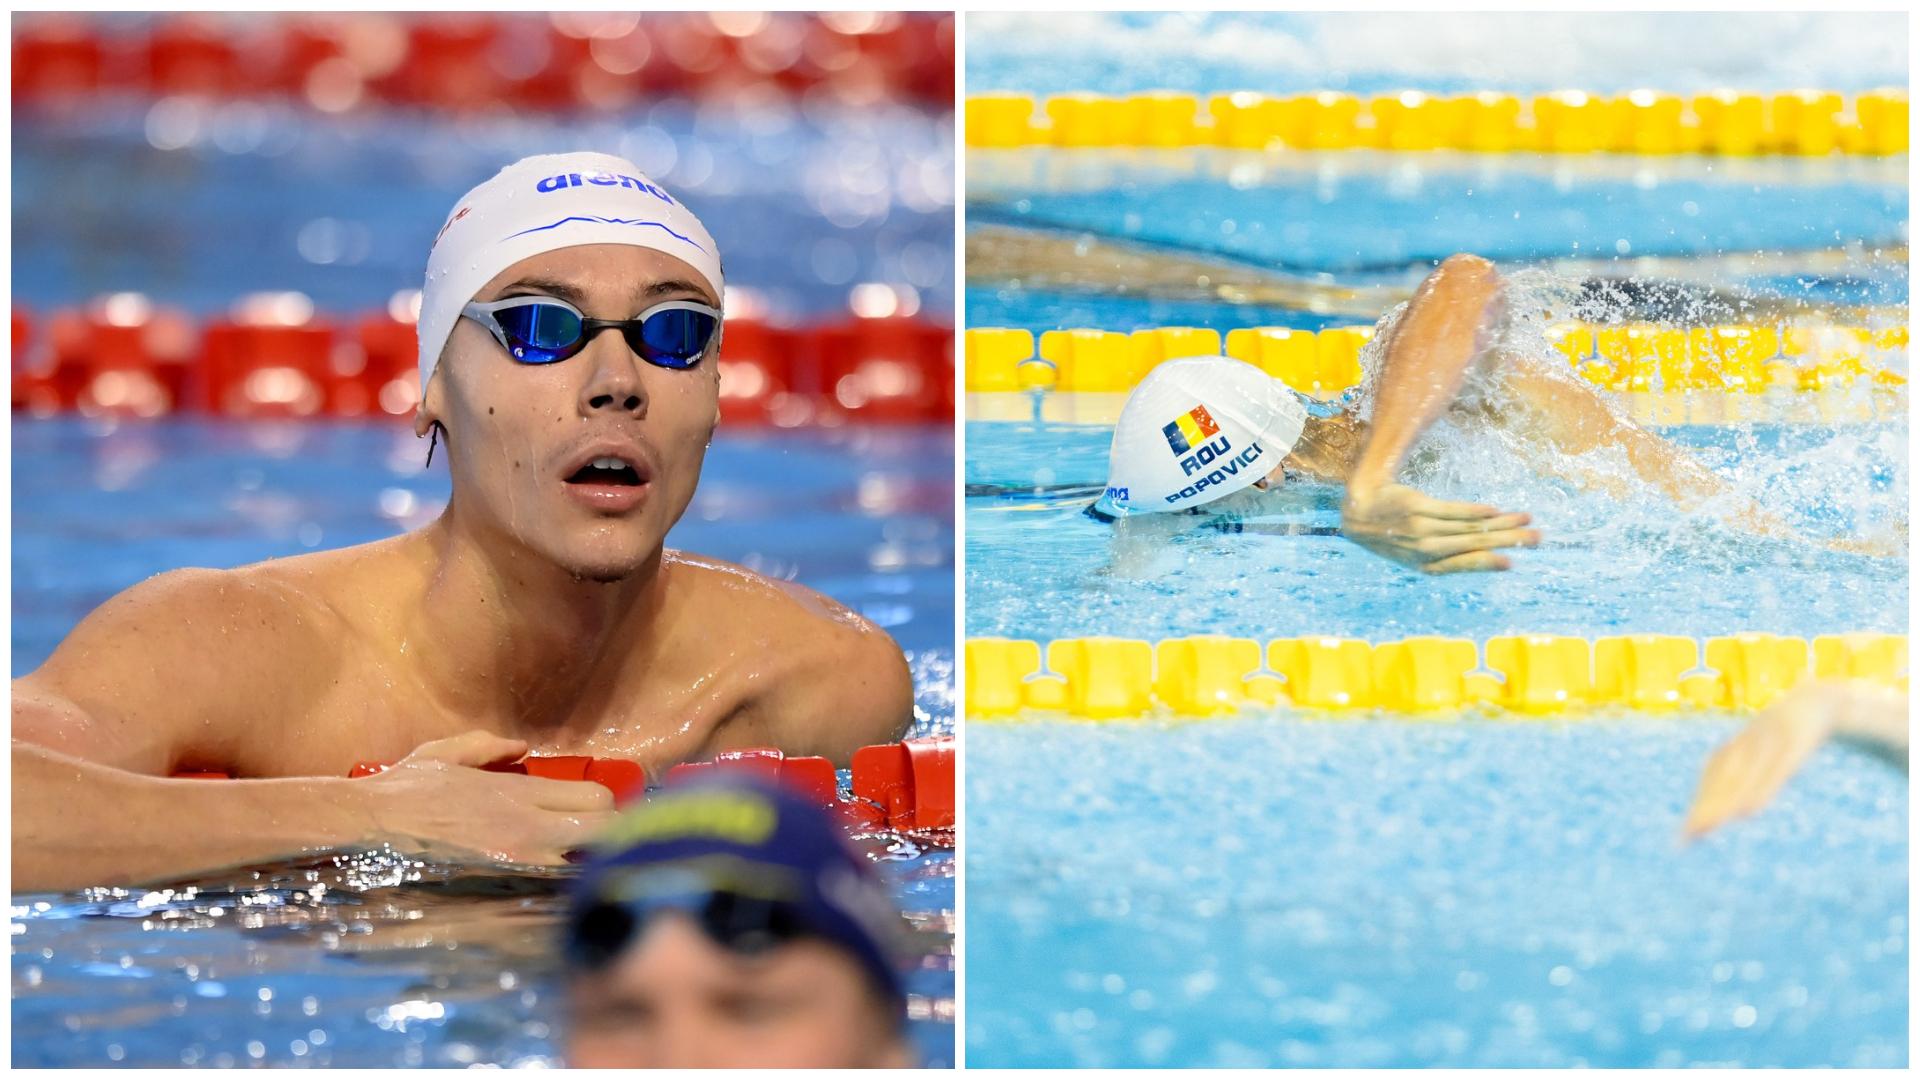 Colaj cu David Popovici în două ipostaze diferite în bazin la Campionatele Europene de înot